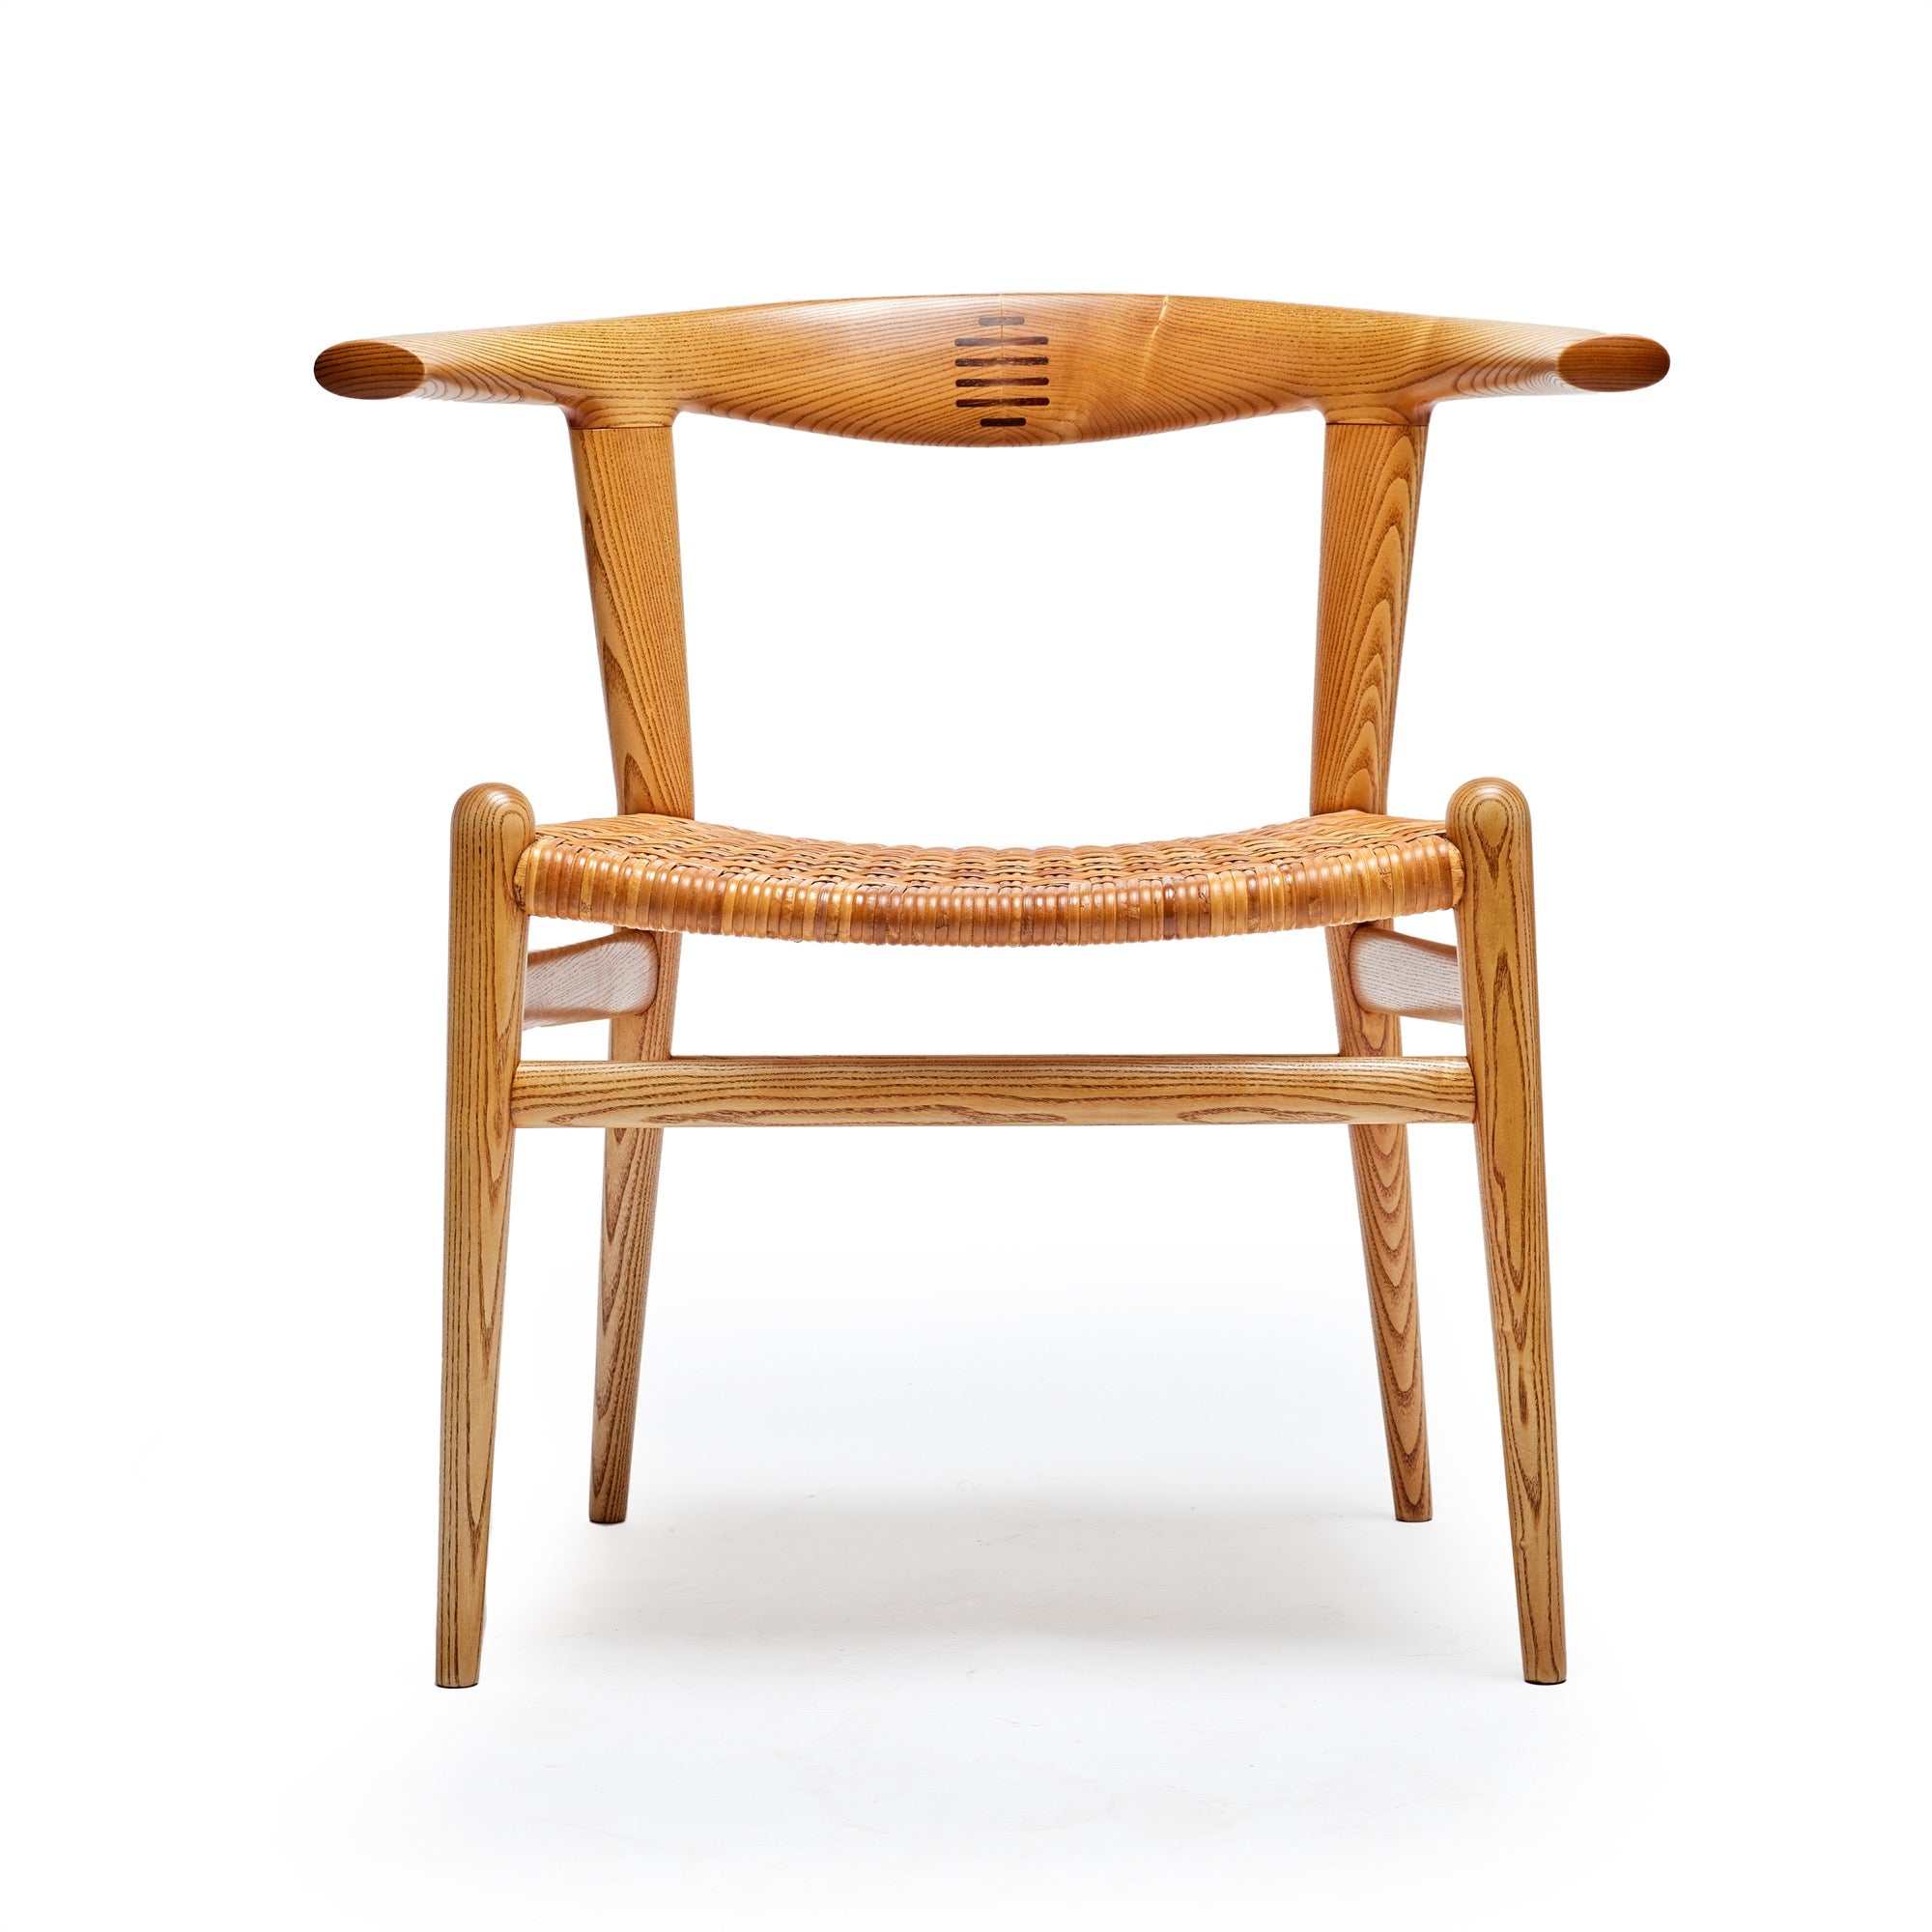 Ash "Bullhorn" Dining Chair by Hans J. Wegner for PP Mobler, 1955